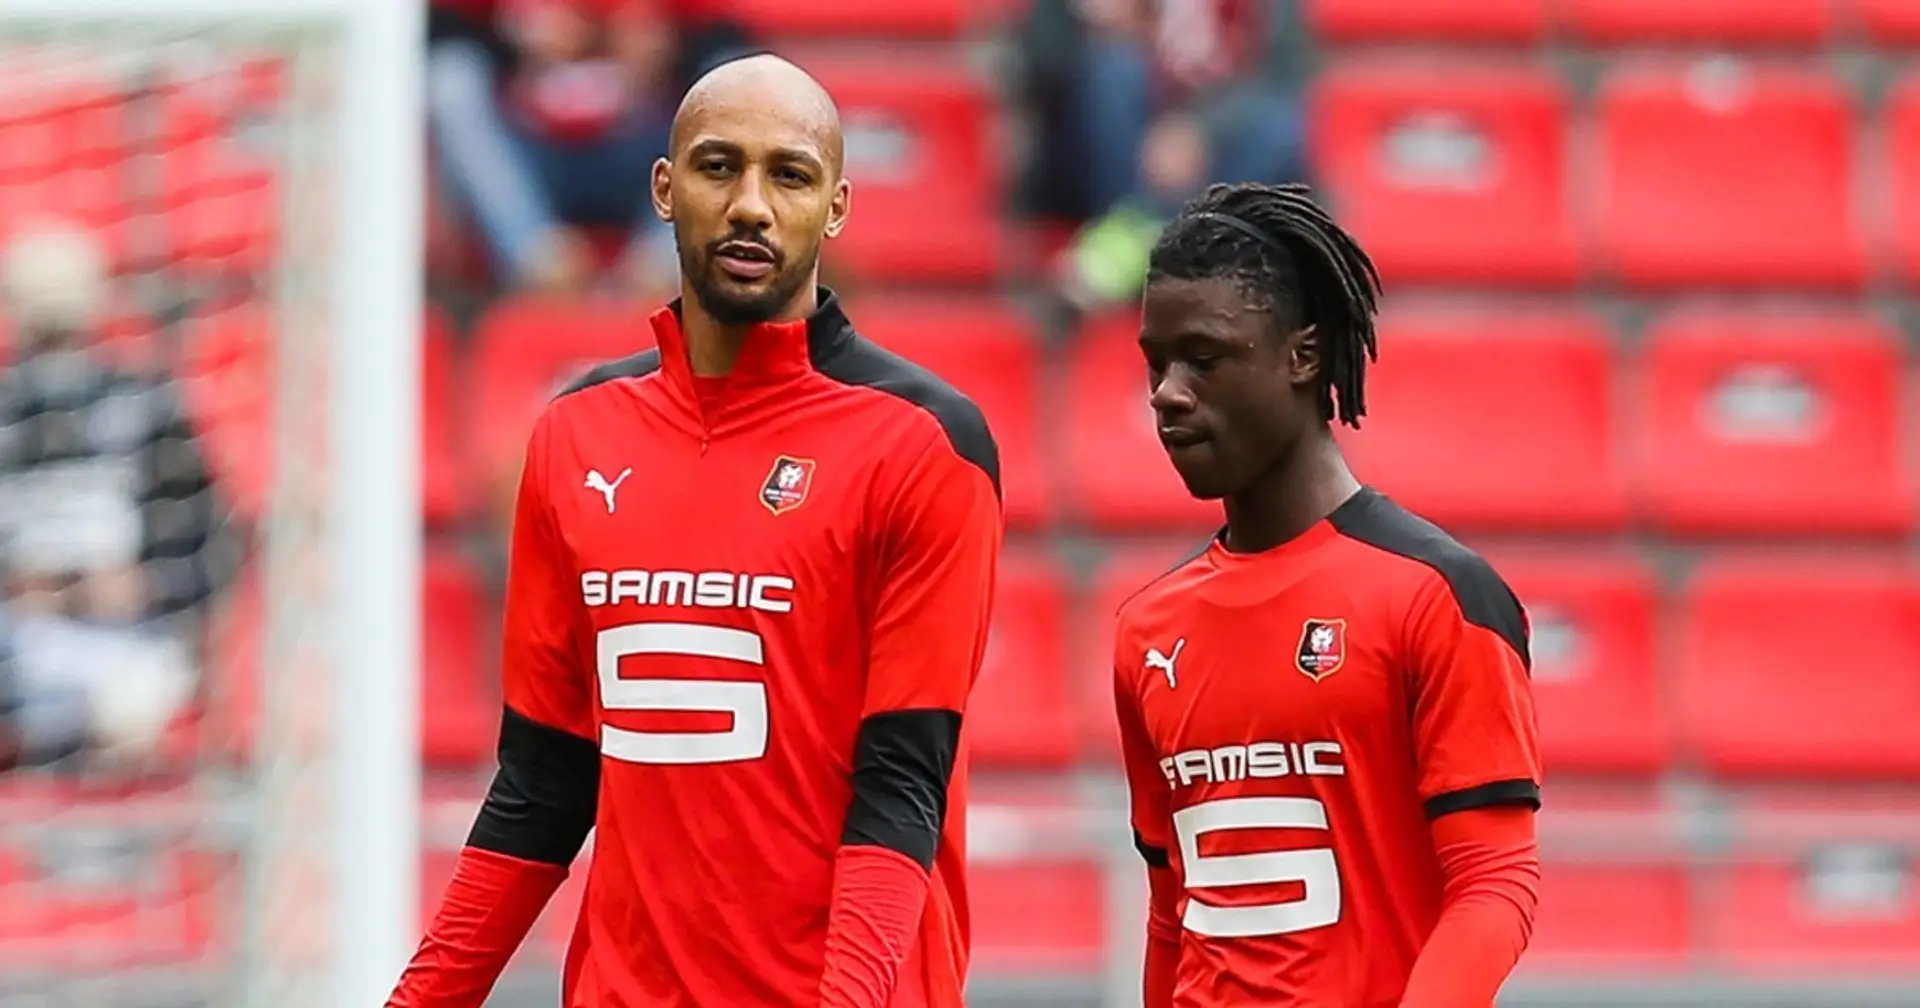 "Je n'y crois pas avec nos deux internationaux absents" : Les fans de Rennes redoutent le PSG surtout avec l'absence de N'zonzi et Camavinga